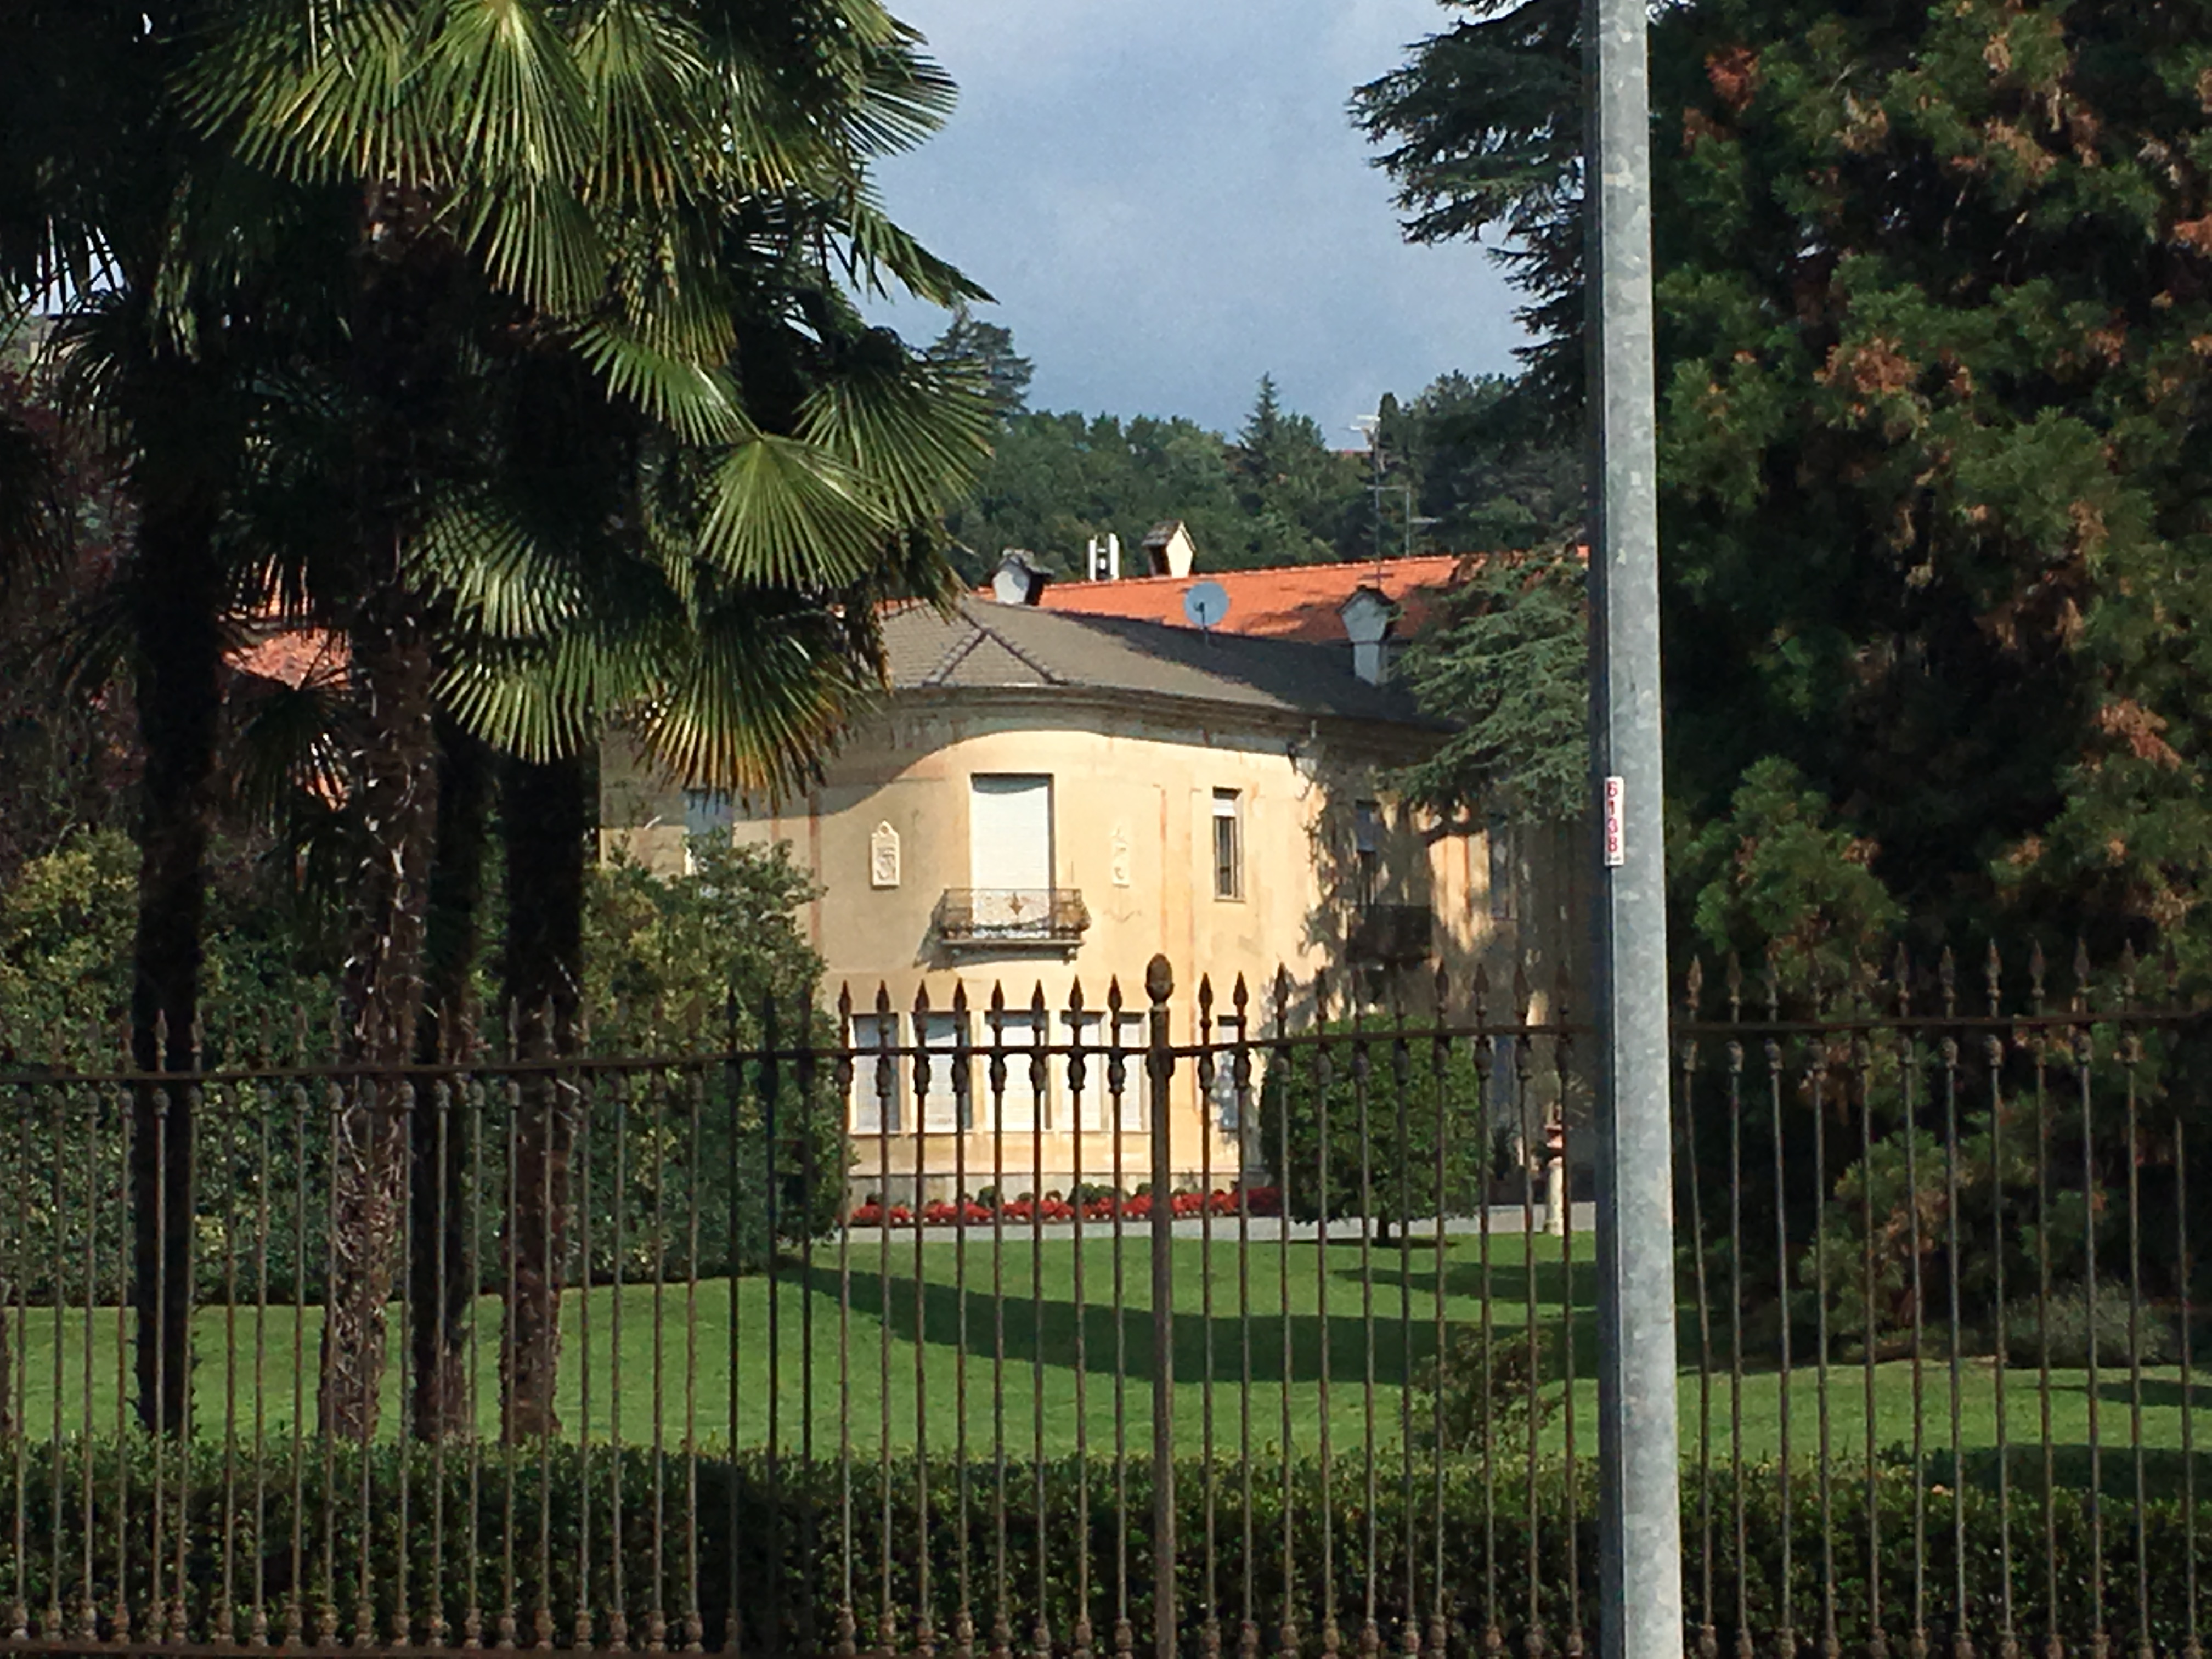 Villa Mosca (villa, privata) - Biella (BI) 